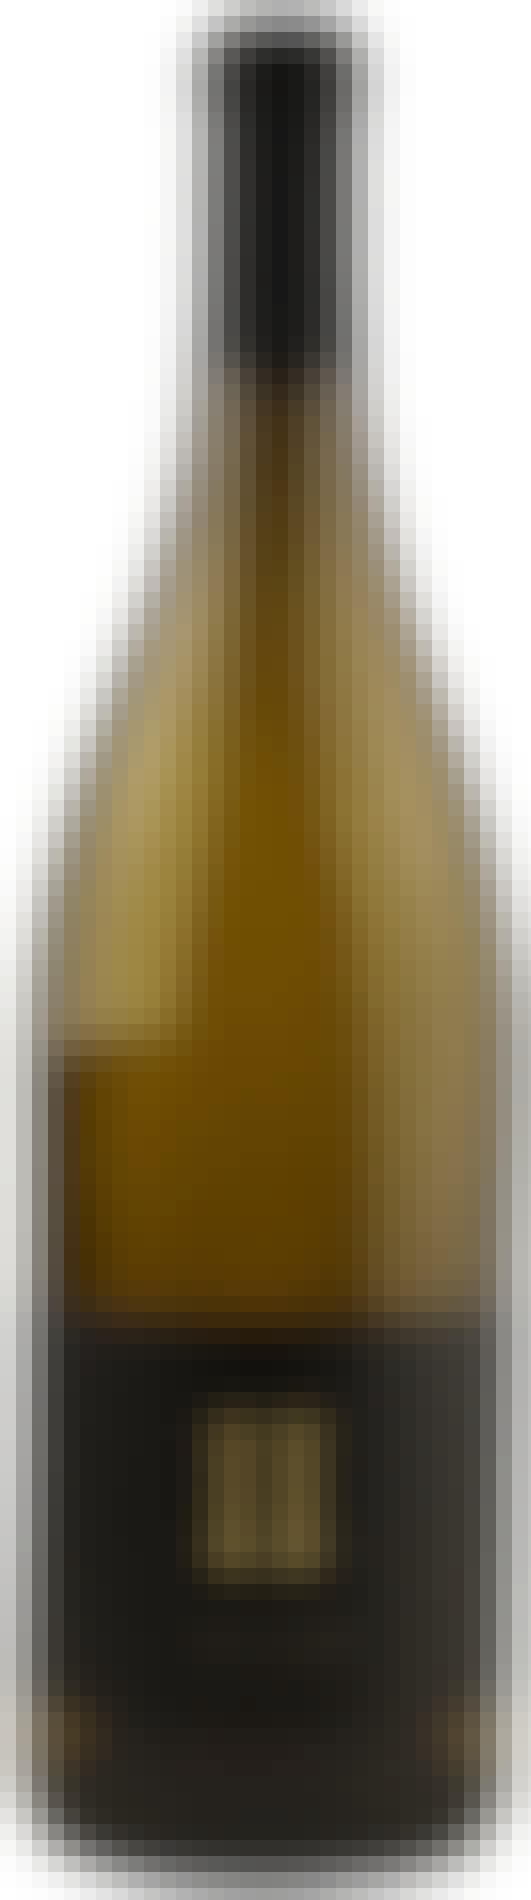 Alpha Omega II Chardonnay 750ml